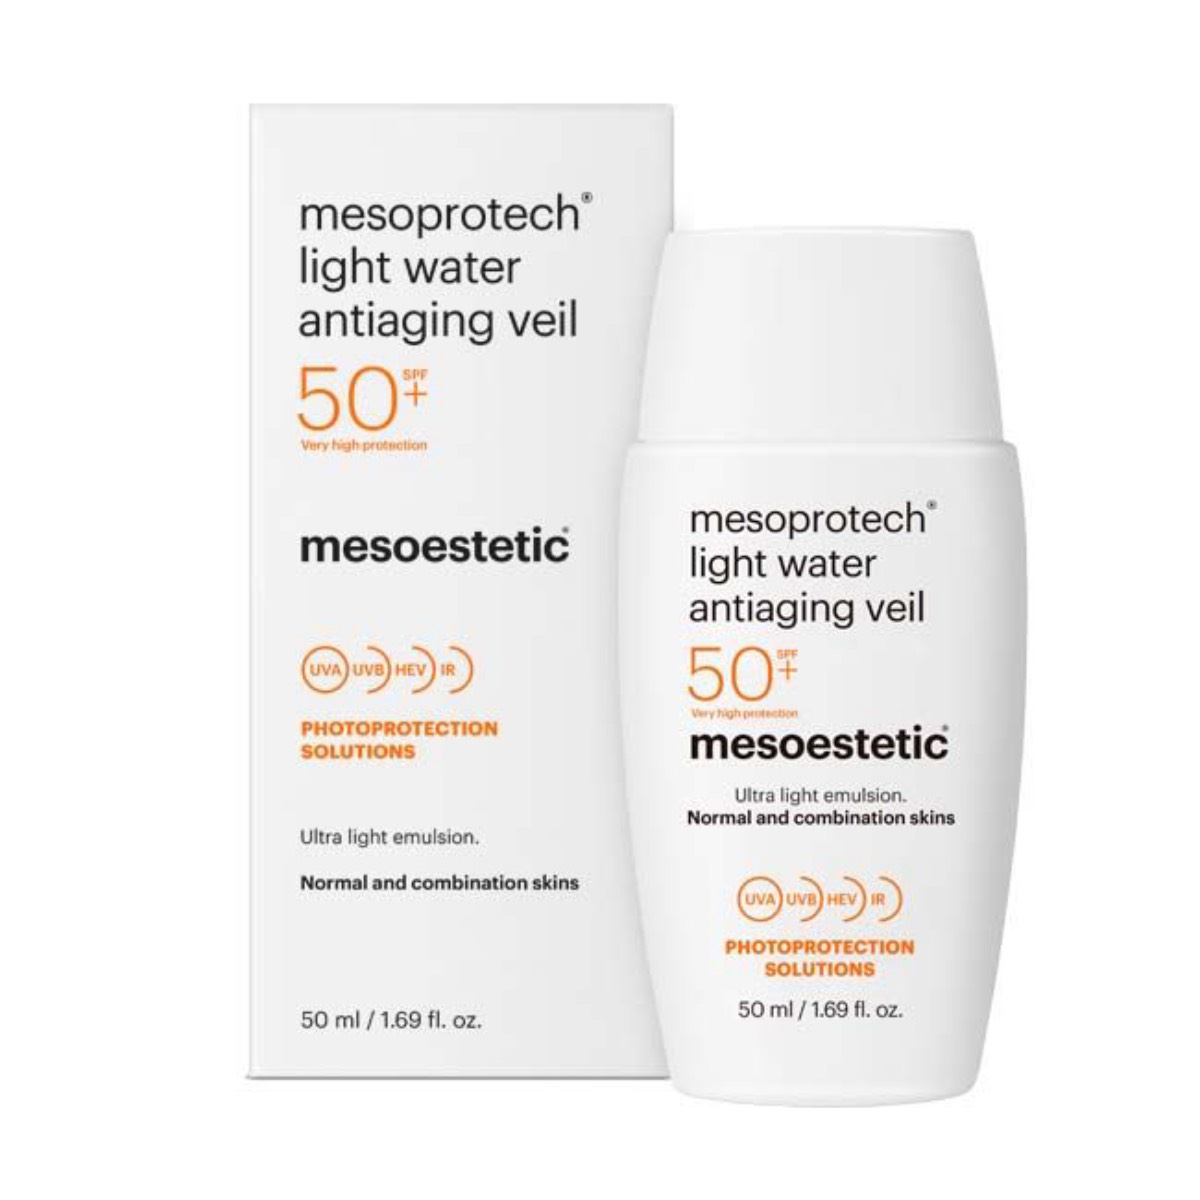 t-dsun0026-mesoprotech-light-water-antiaging-veil-50-